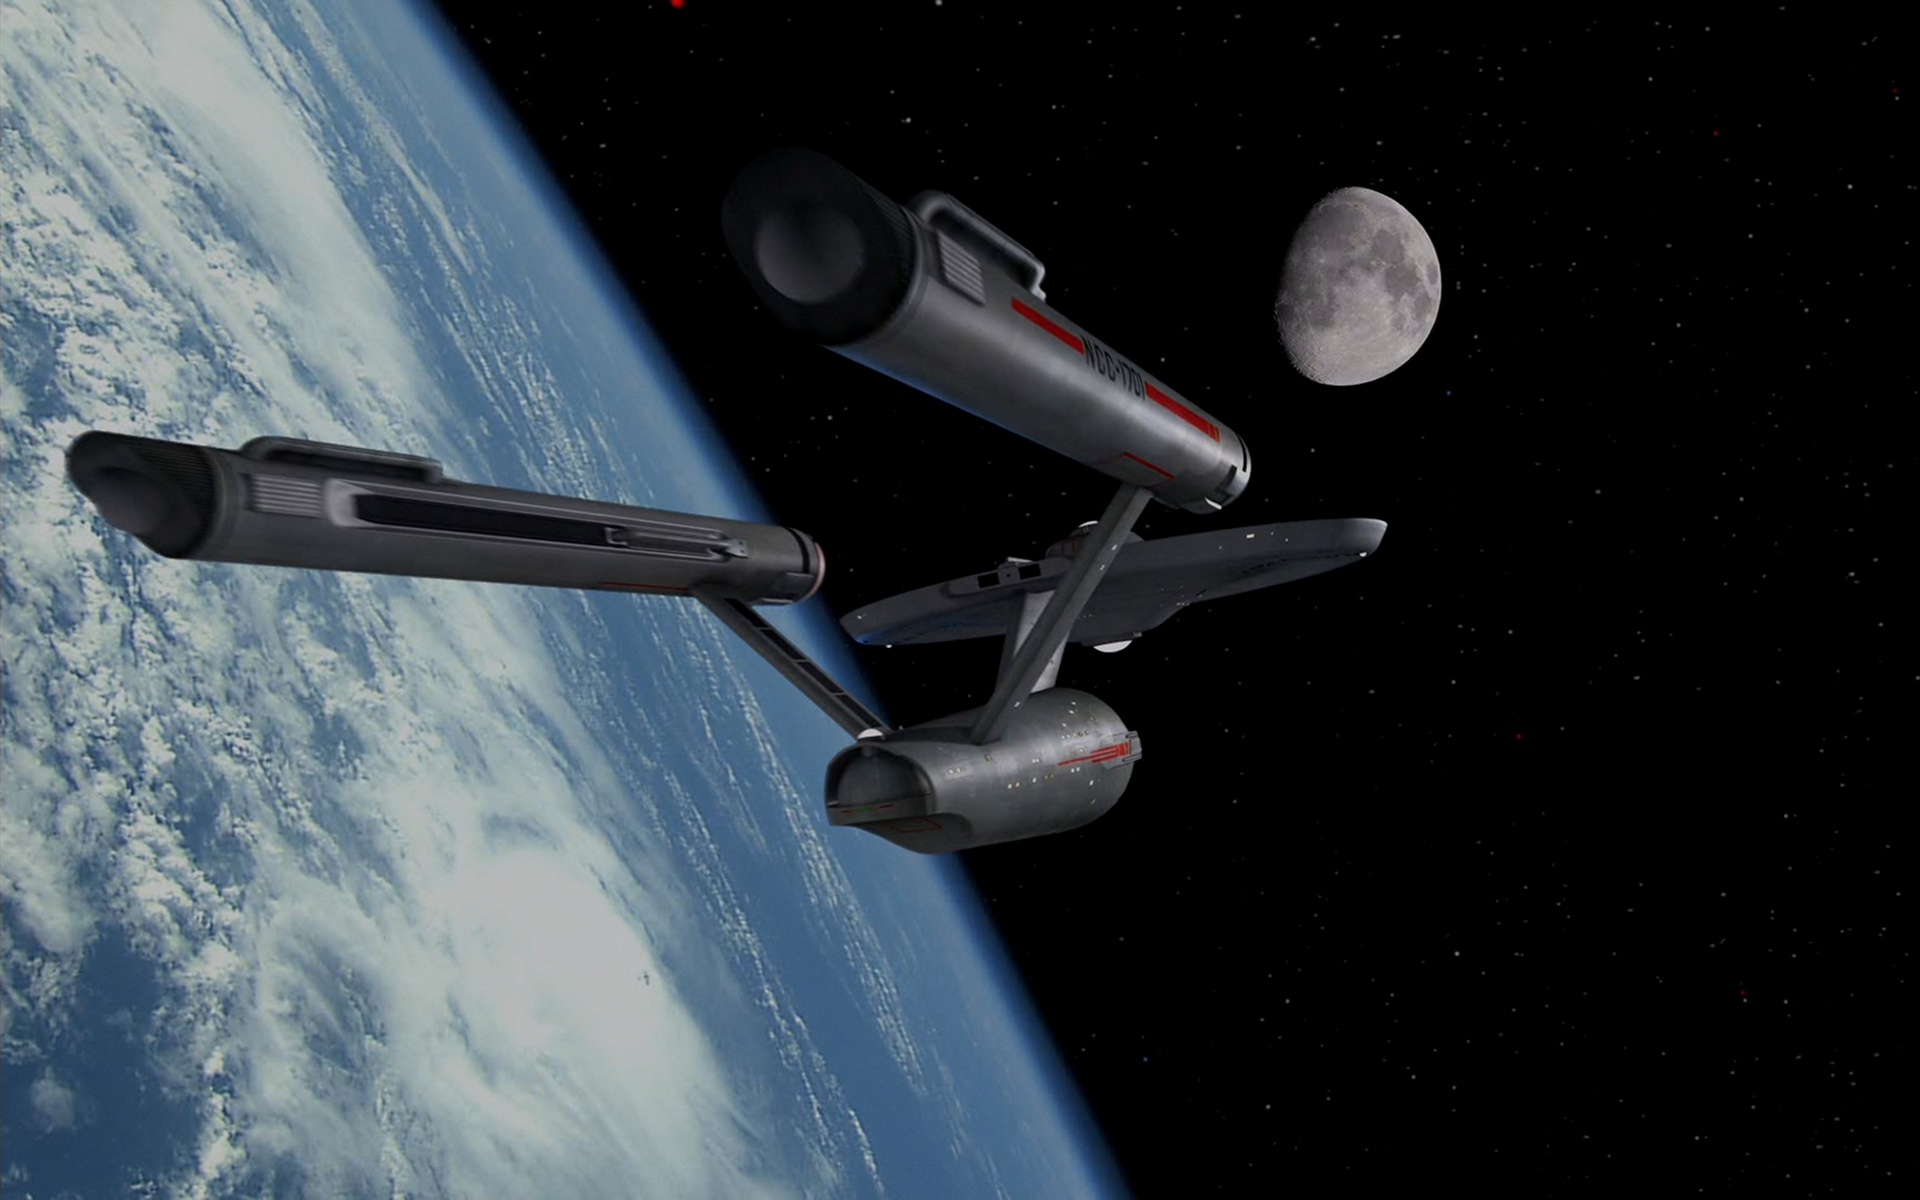 Uss Enterprise Star Trek Earth - HD Wallpaper 